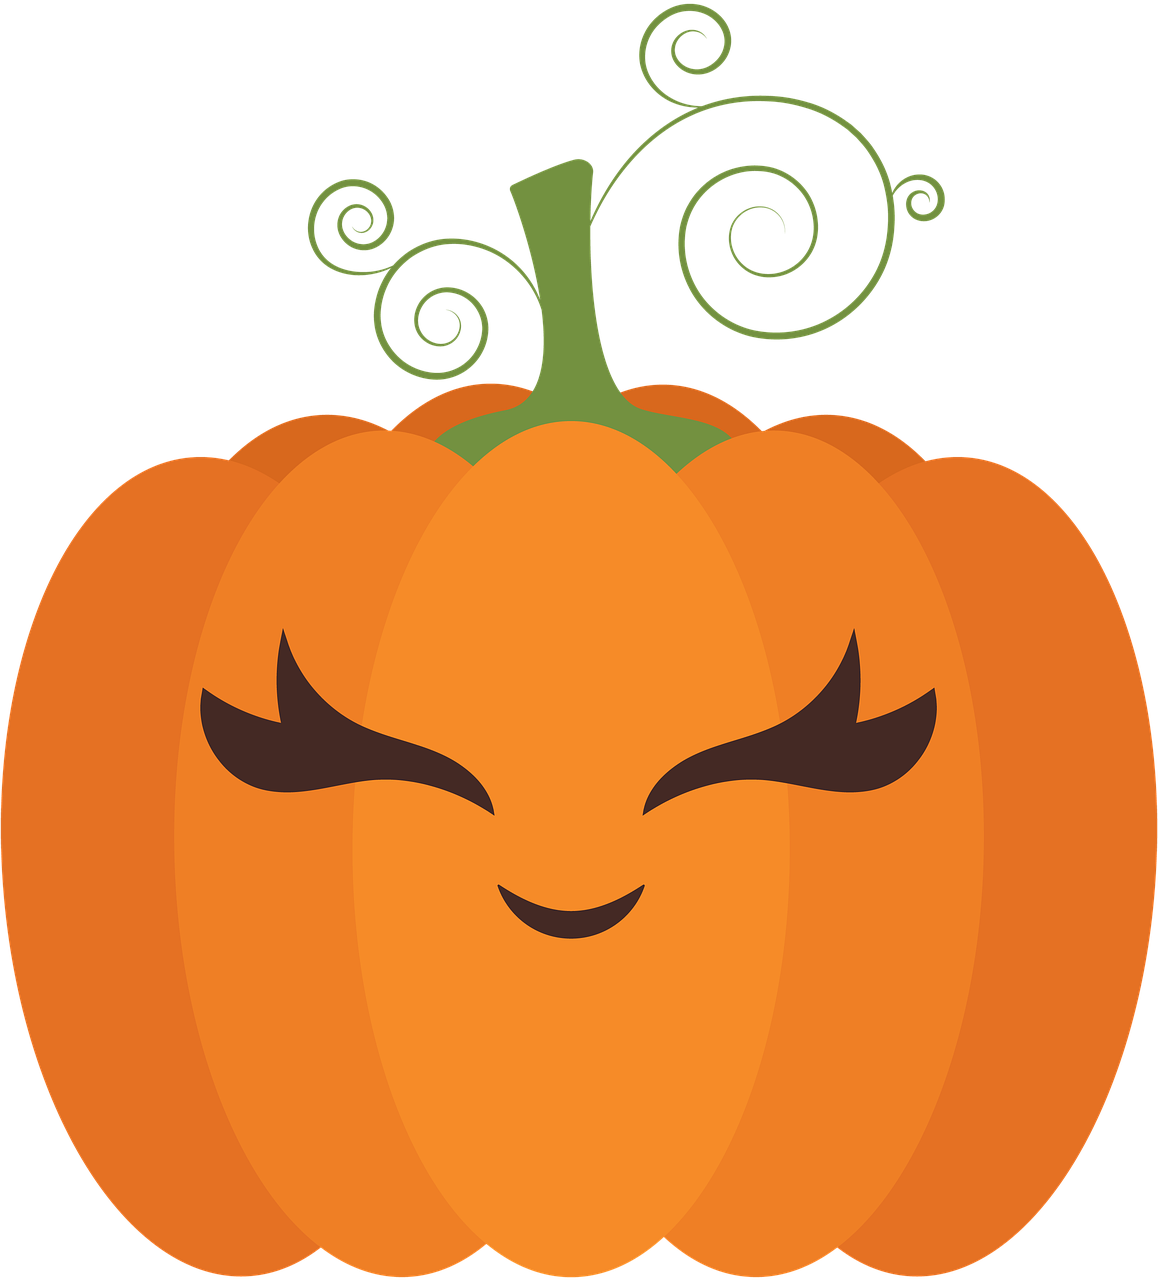 Cute Pumpkin PNG Image File